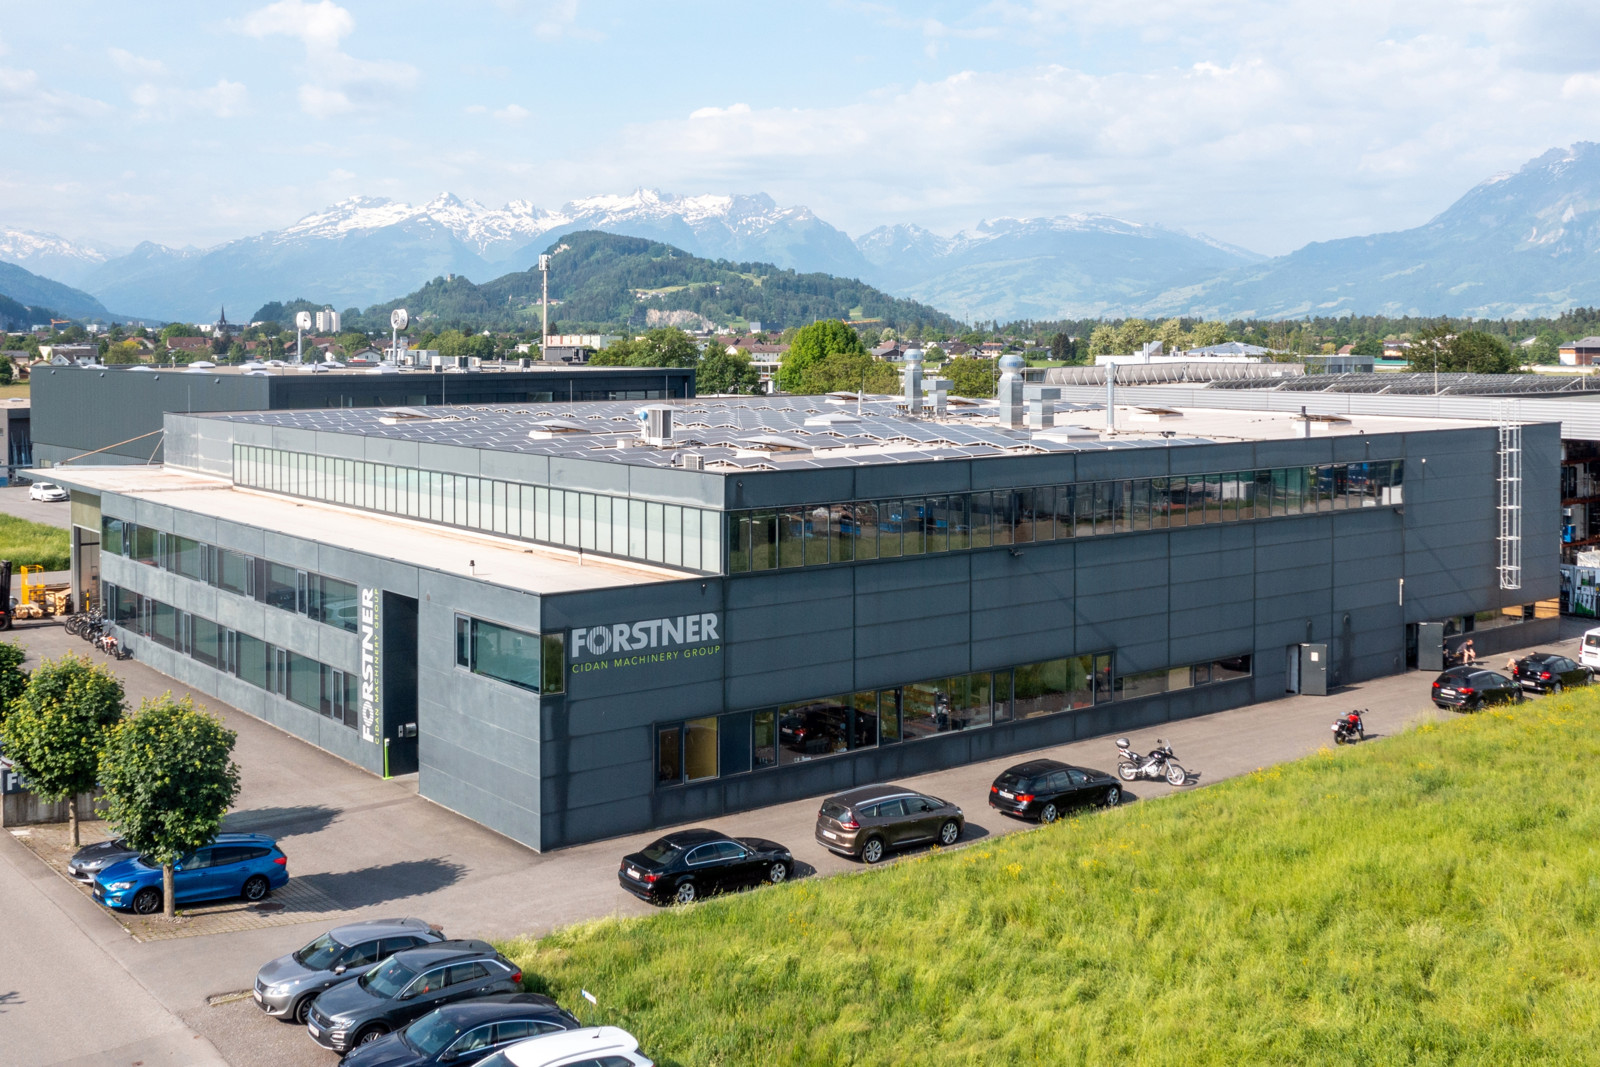 Das Forstner-Firmengebäude befindet sich in Feldkirch, der zweitgrößten Stadt im österreichischen Bundesland Voralberg – wenige Kilometer vom Bodensee entfernt.